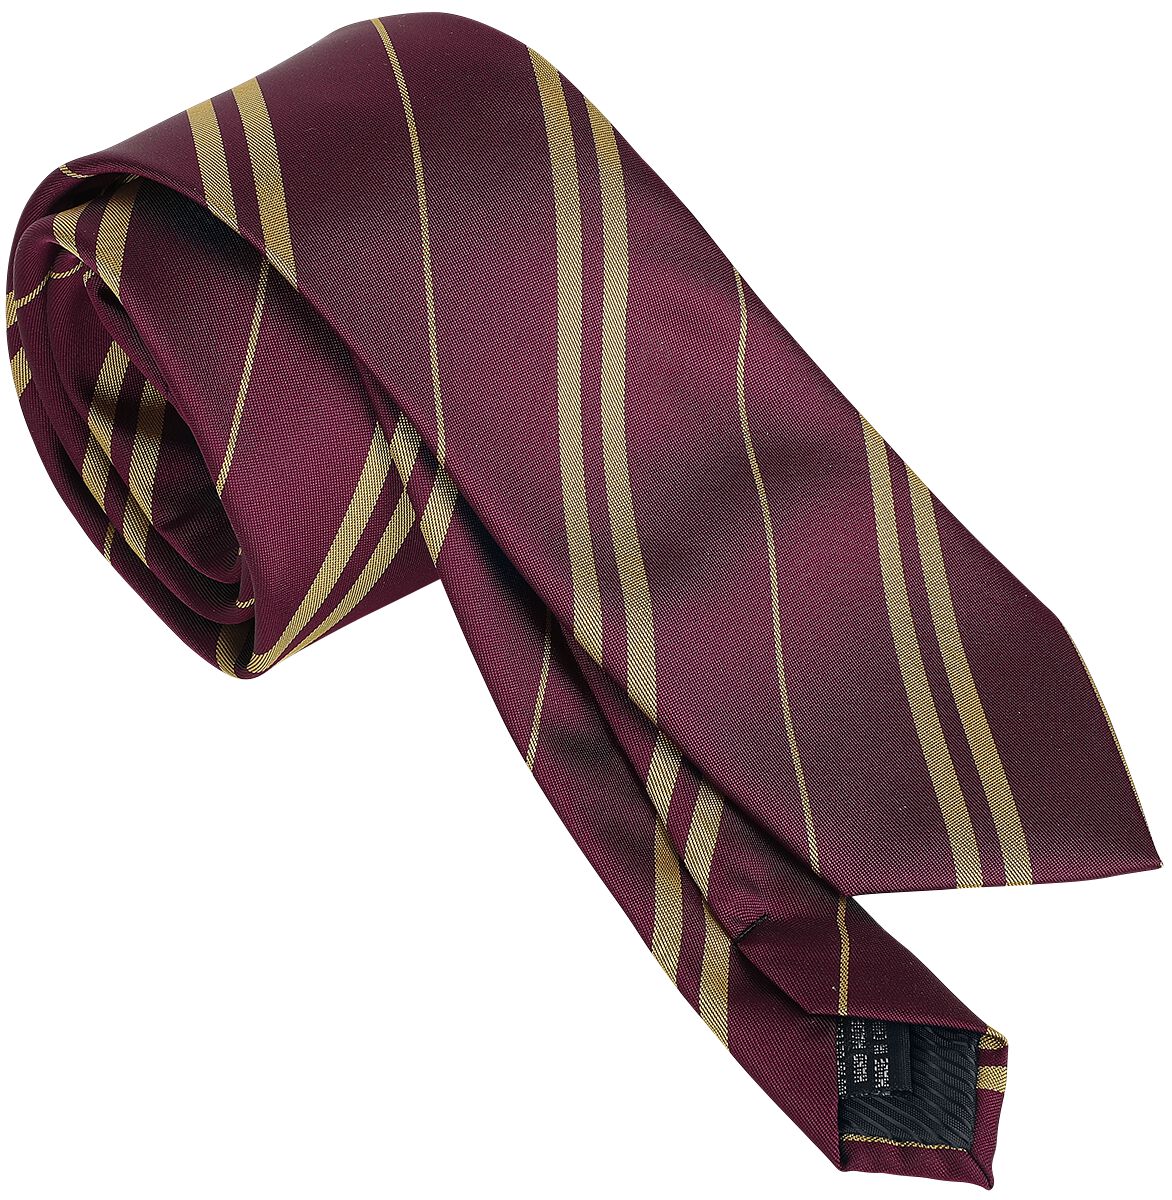 Cravate Harry Potter aux couleurs de Gryffondor